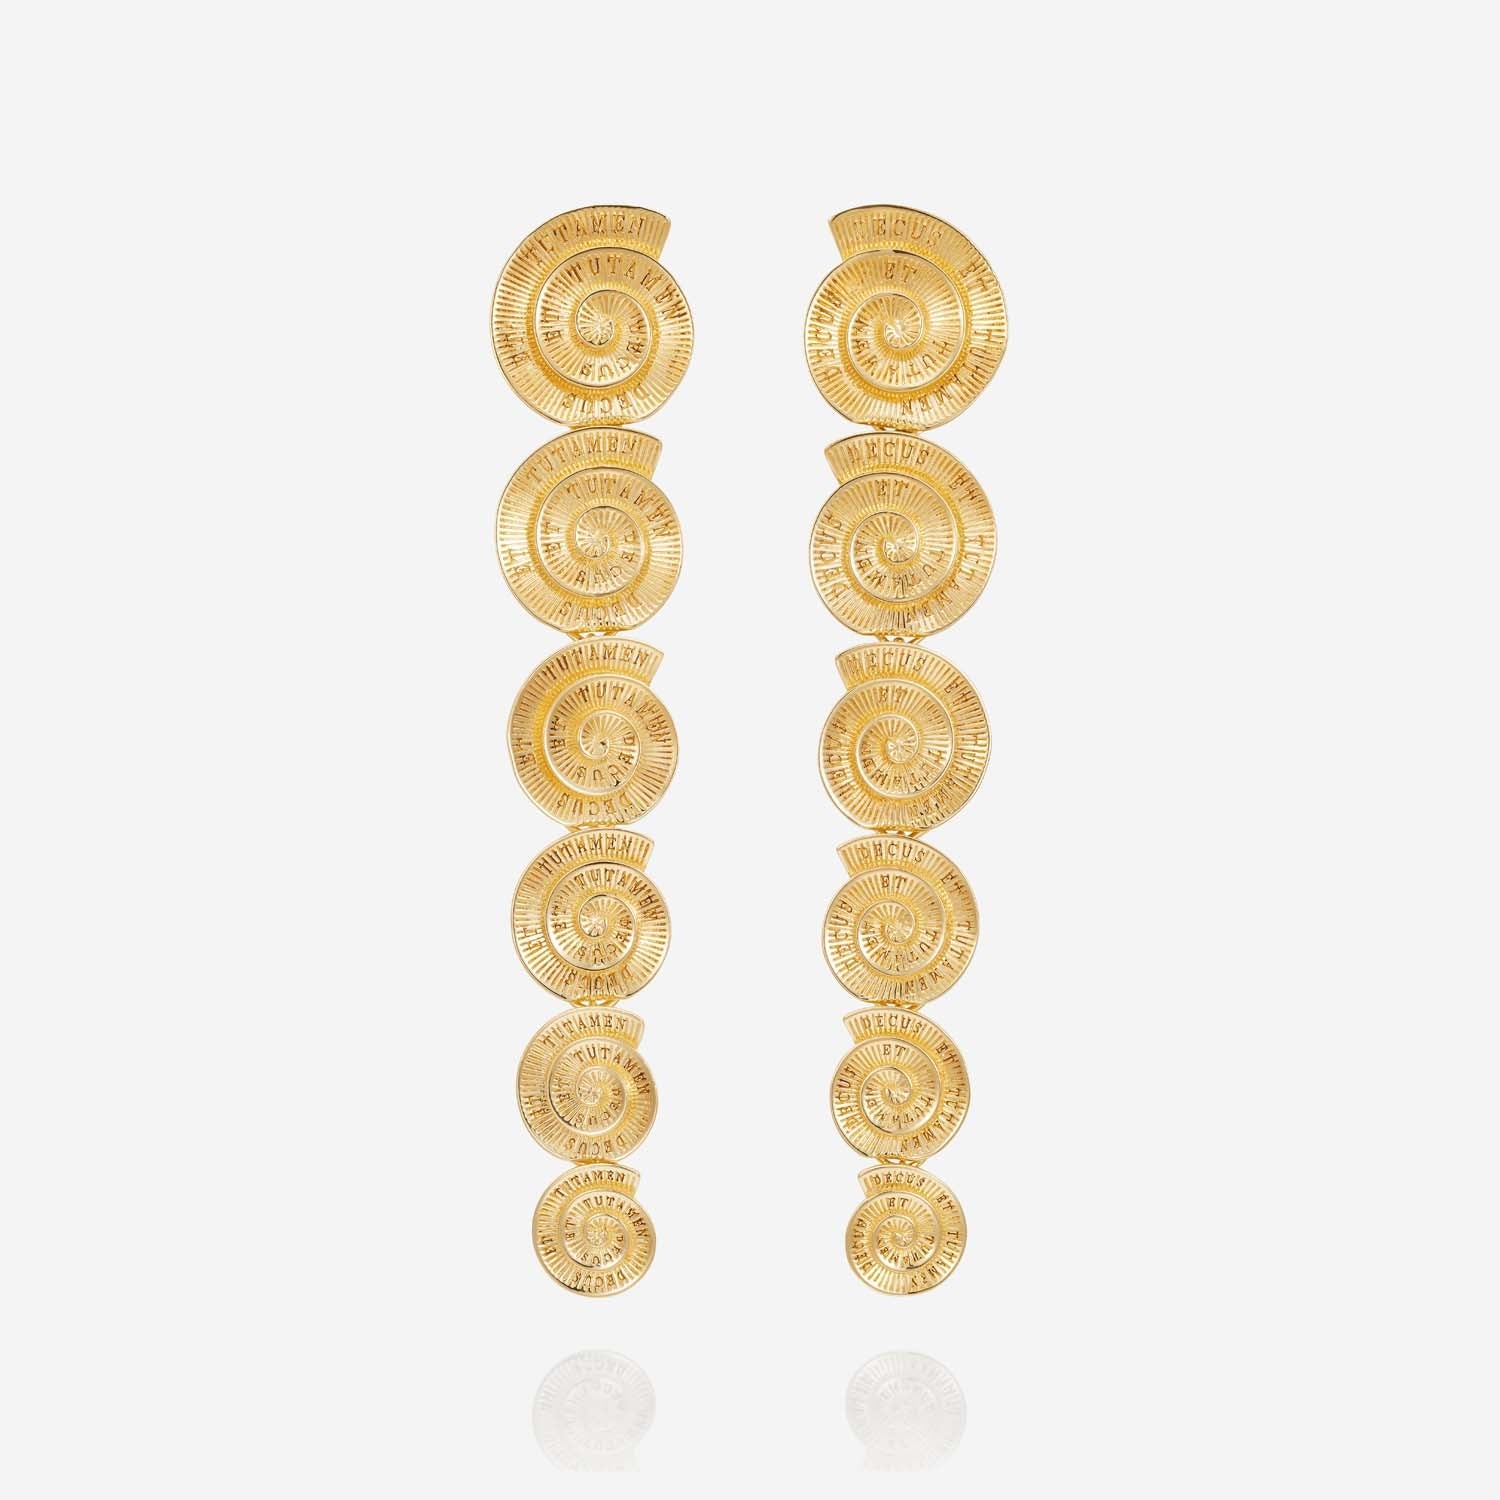 886 Royal Mint Earrings Tutamen Spiral Drop Earrings 18ct Yellow Gold